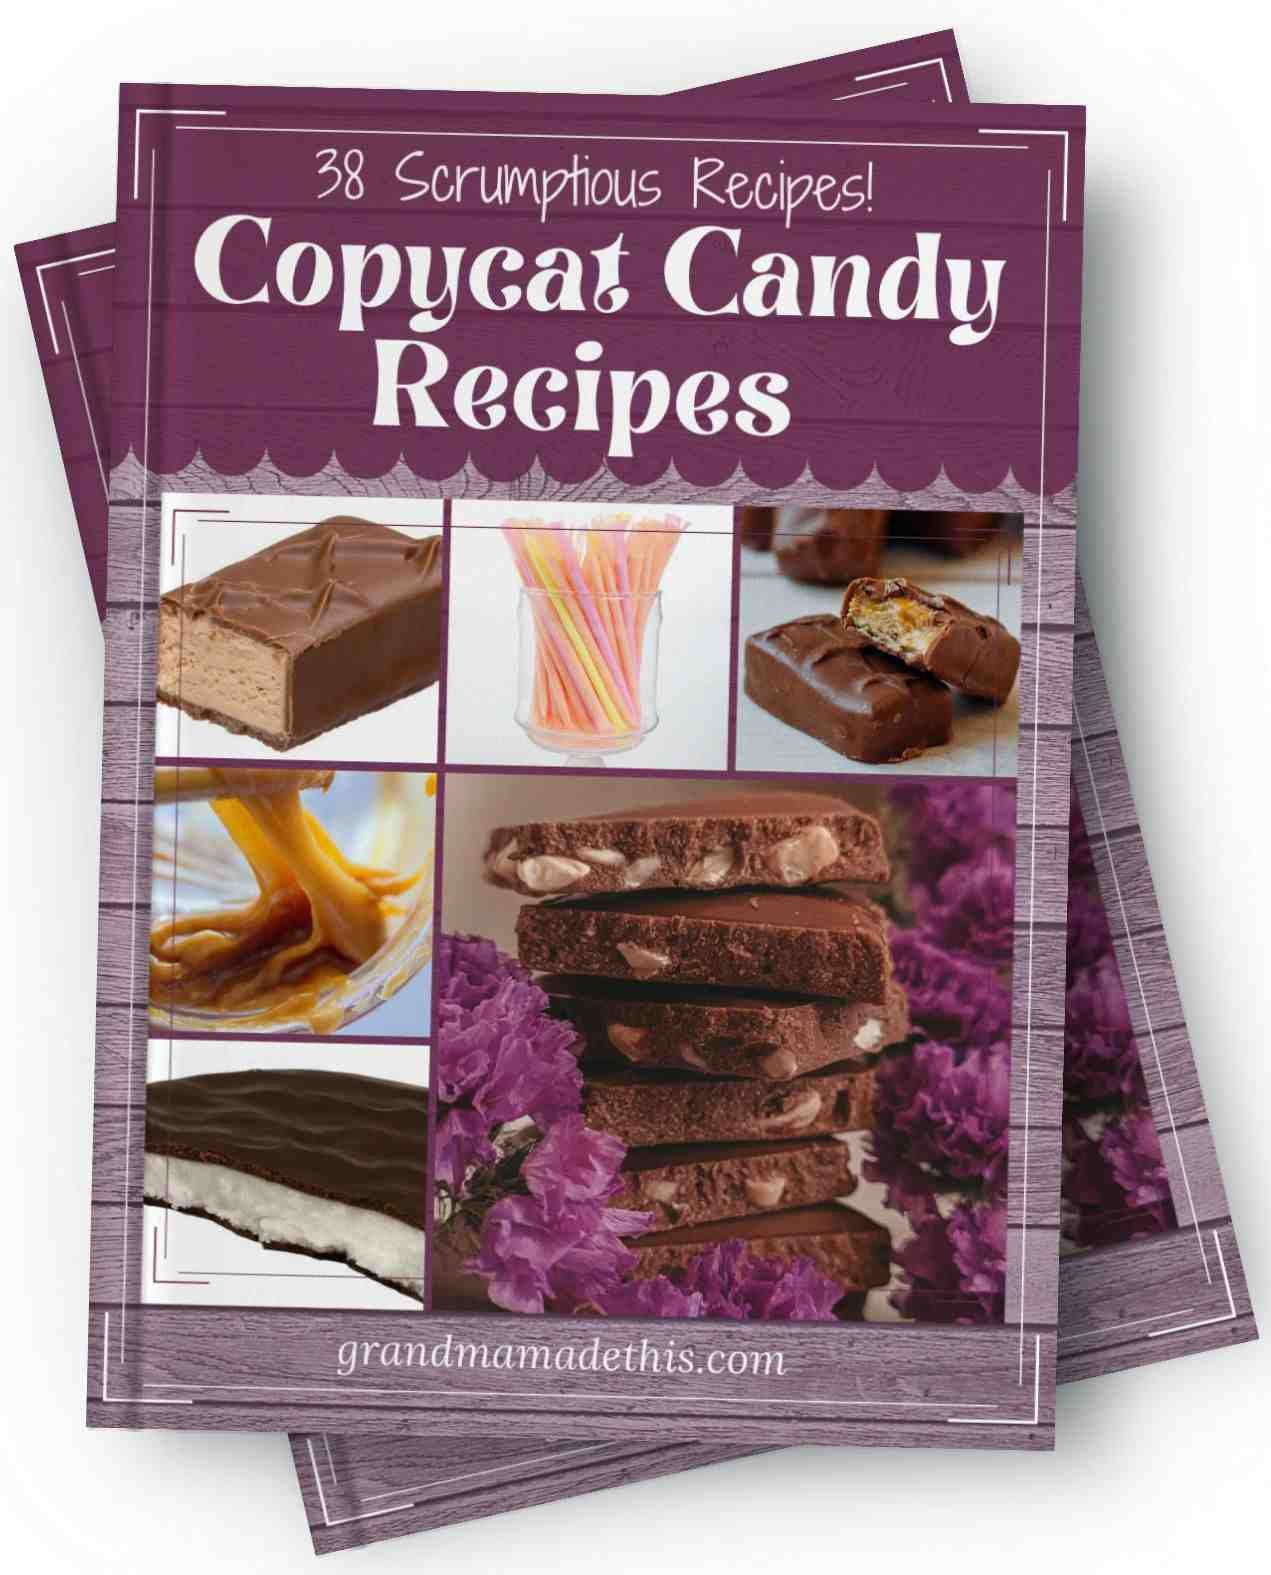 38 Scrumptious Copycat Candy Recipes eBook